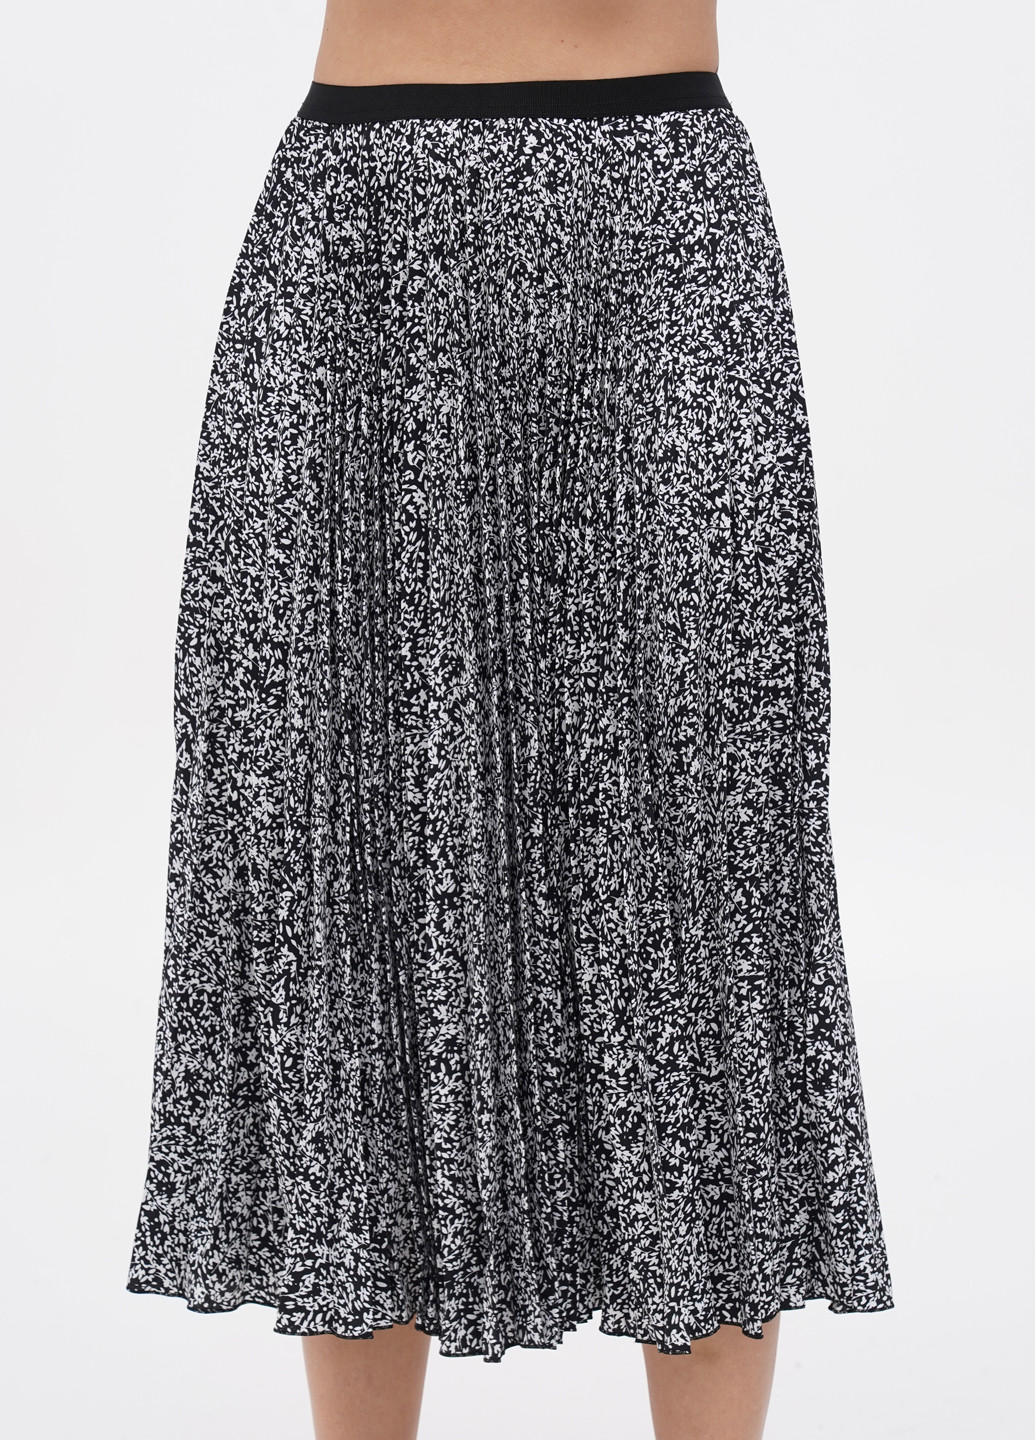 Черно-белая кэжуал цветочной расцветки юбка Closet плиссе